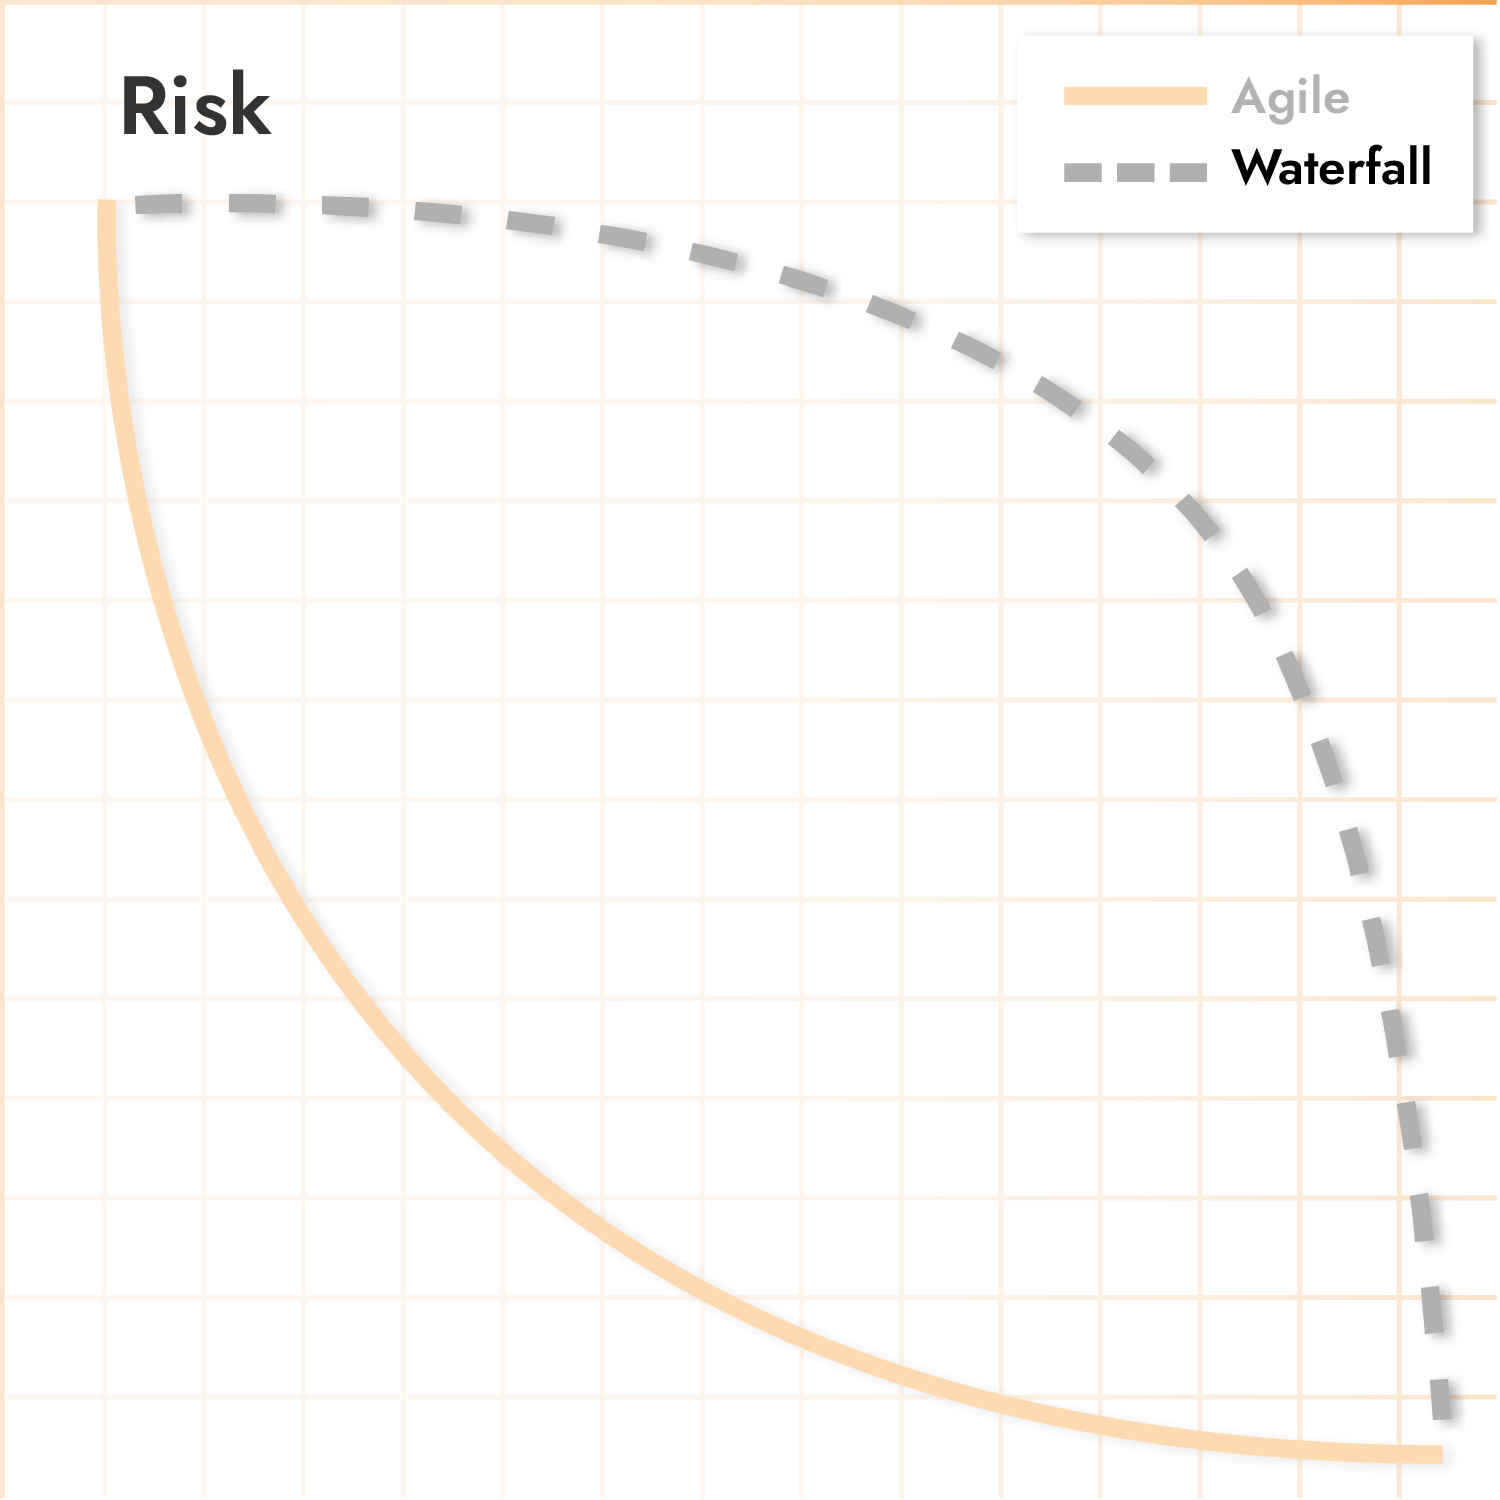 Mit Waterfall steigt das Risiko deines Projekts